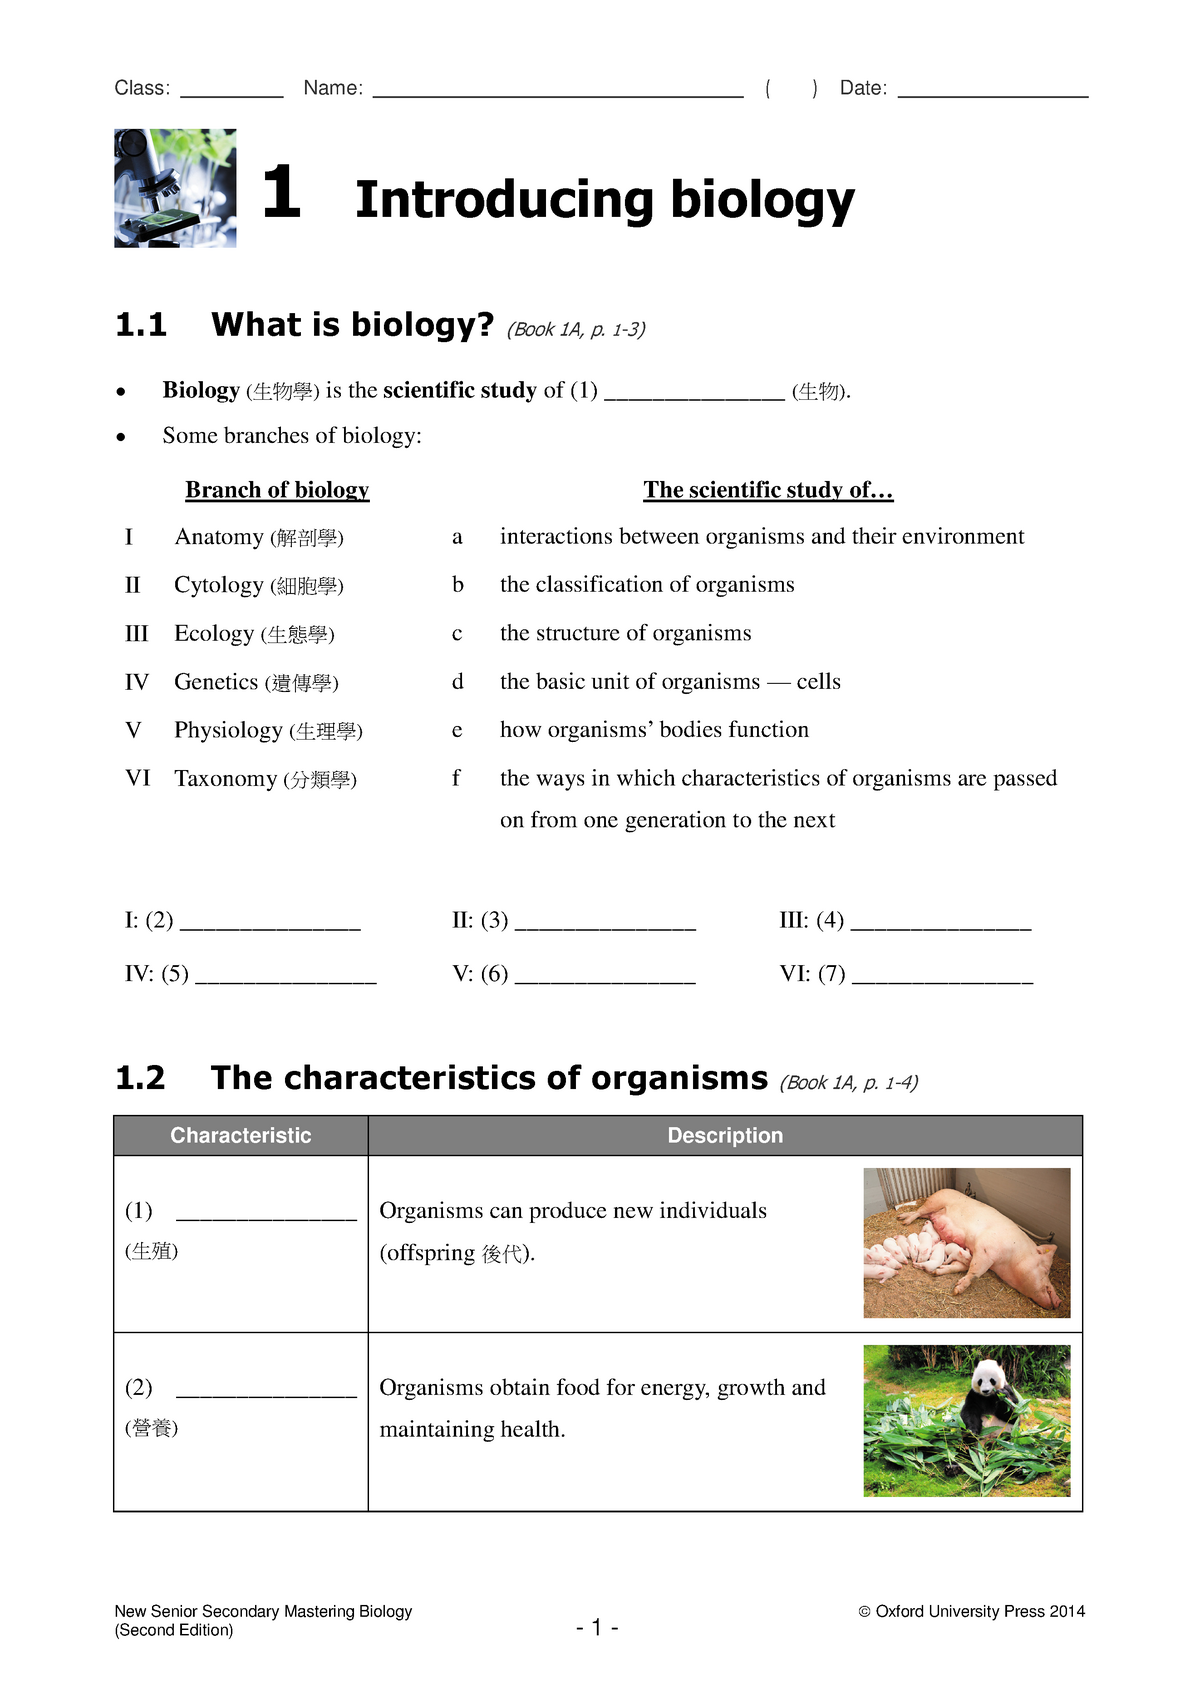 biology homework questions